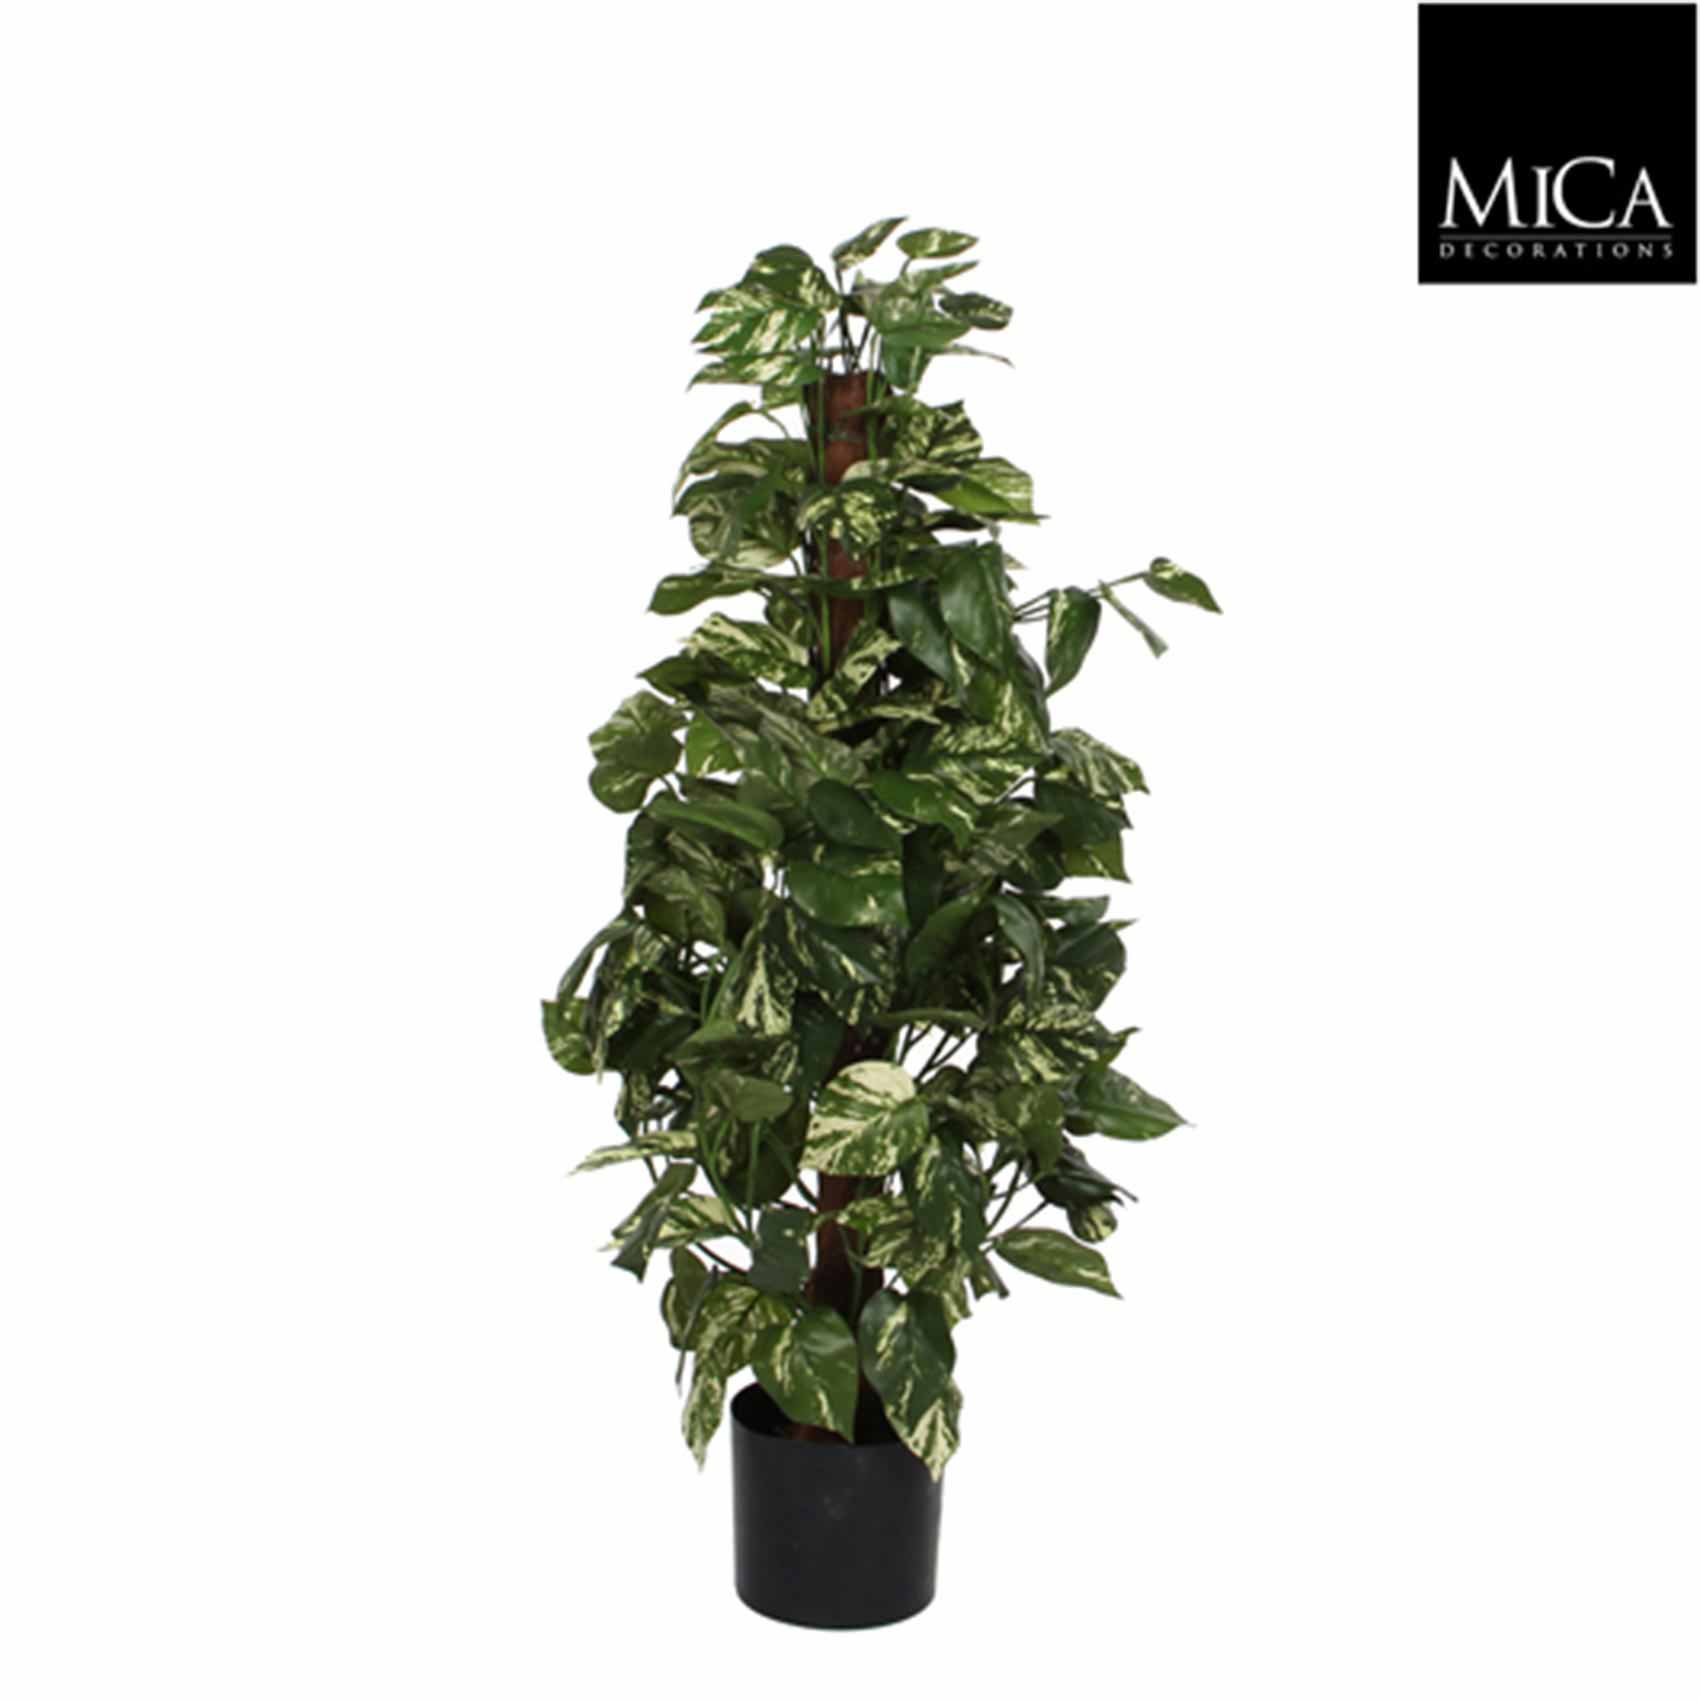 Mica decorations plante artificielle scindapsus - 45x45x100 cm - pe - vert